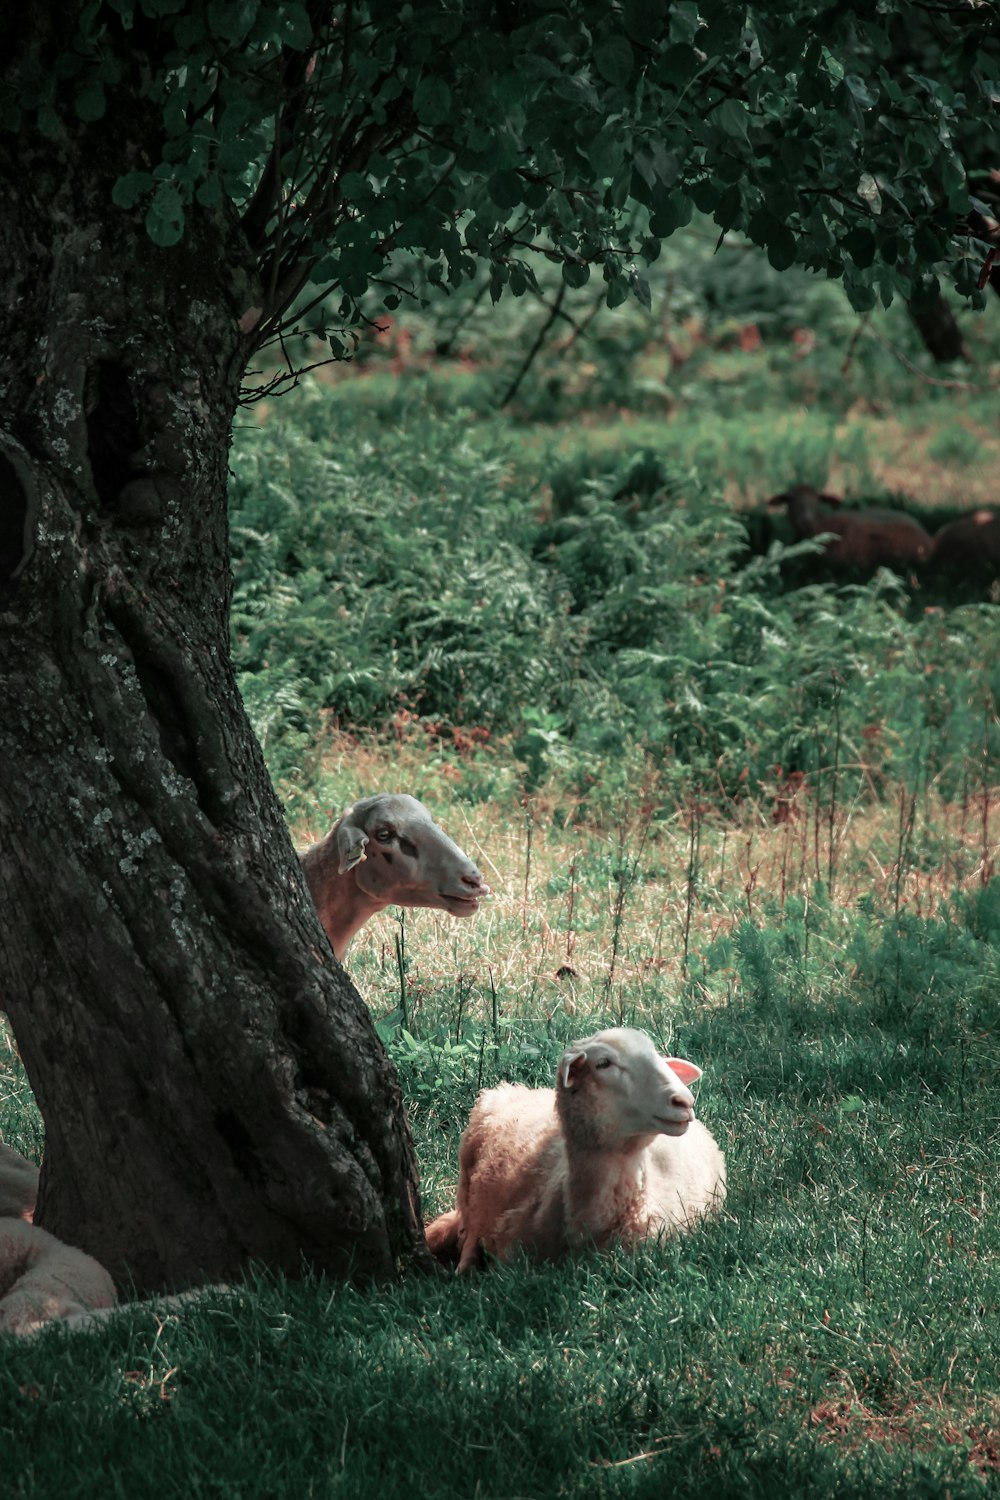 昼間の緑の芝生の羊の群れ